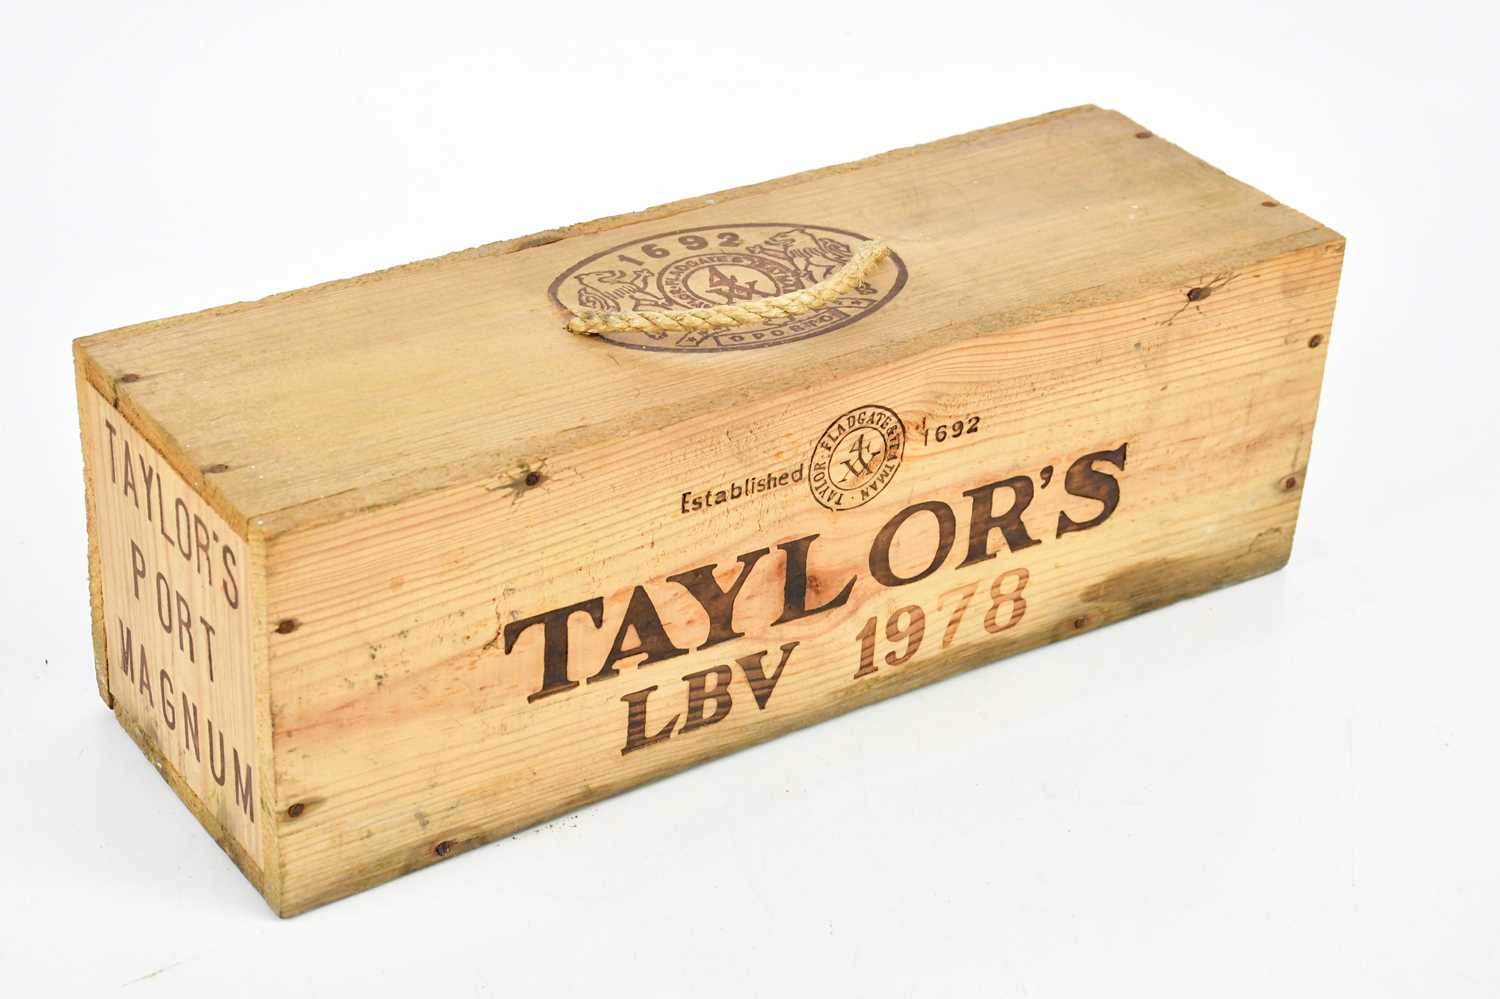 PORT; a magnum bottle of Taylor's LBV port 1978, in sealed wooden carton.